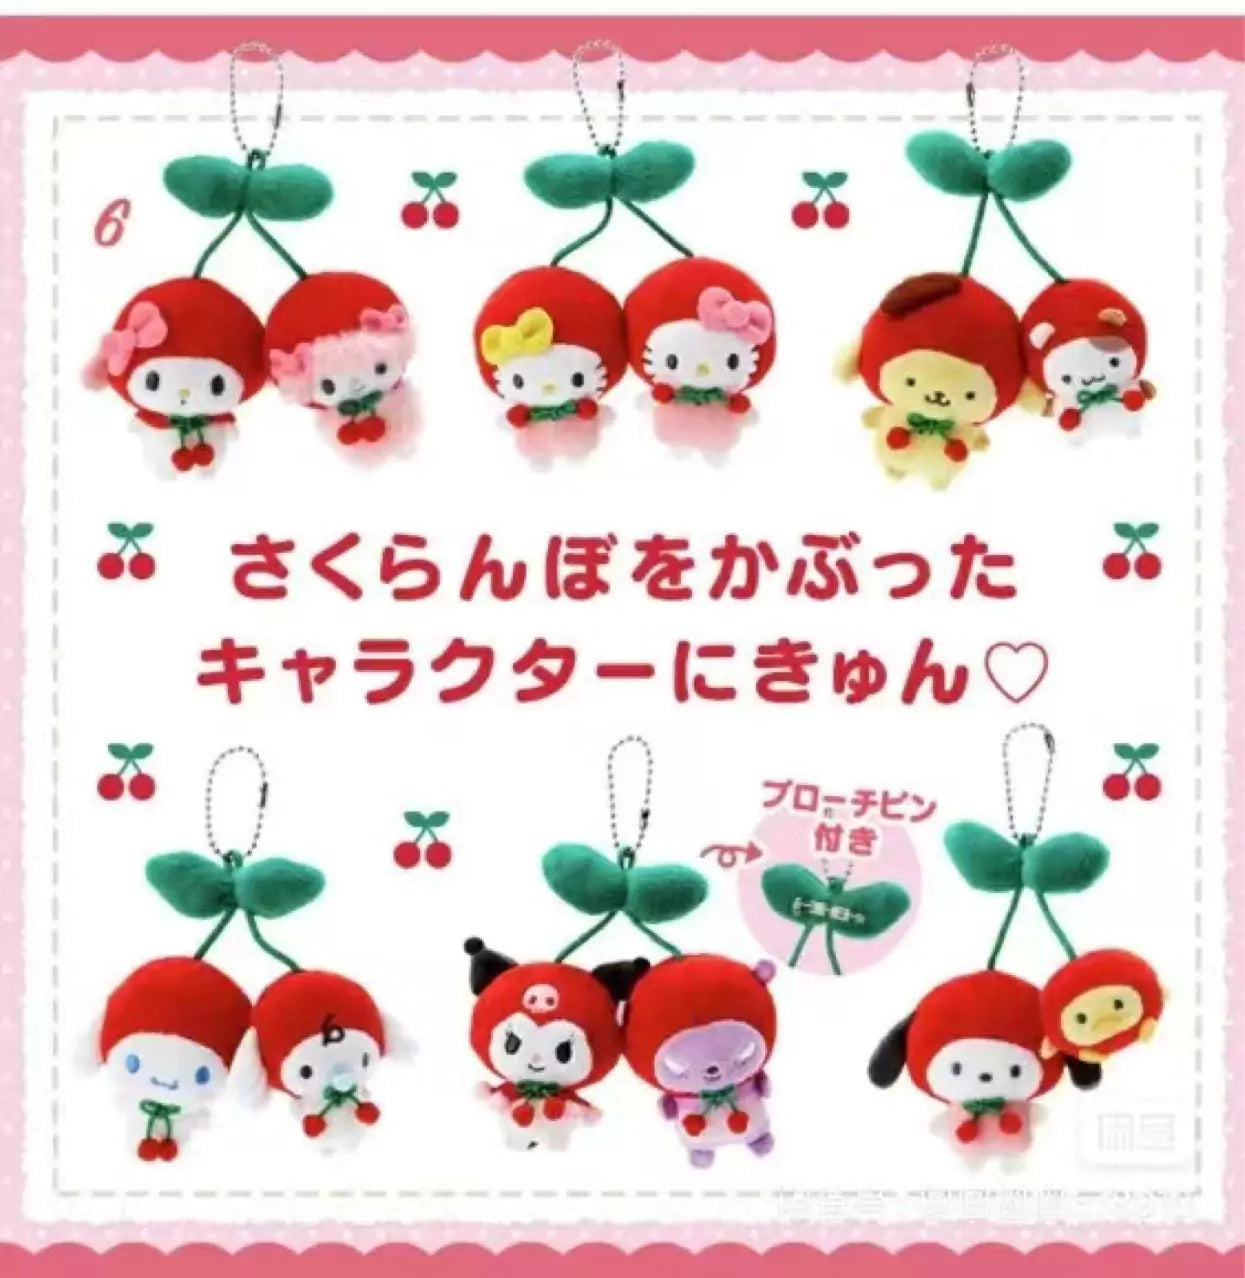 Sanrio Cherry Plush Keychain/Pin